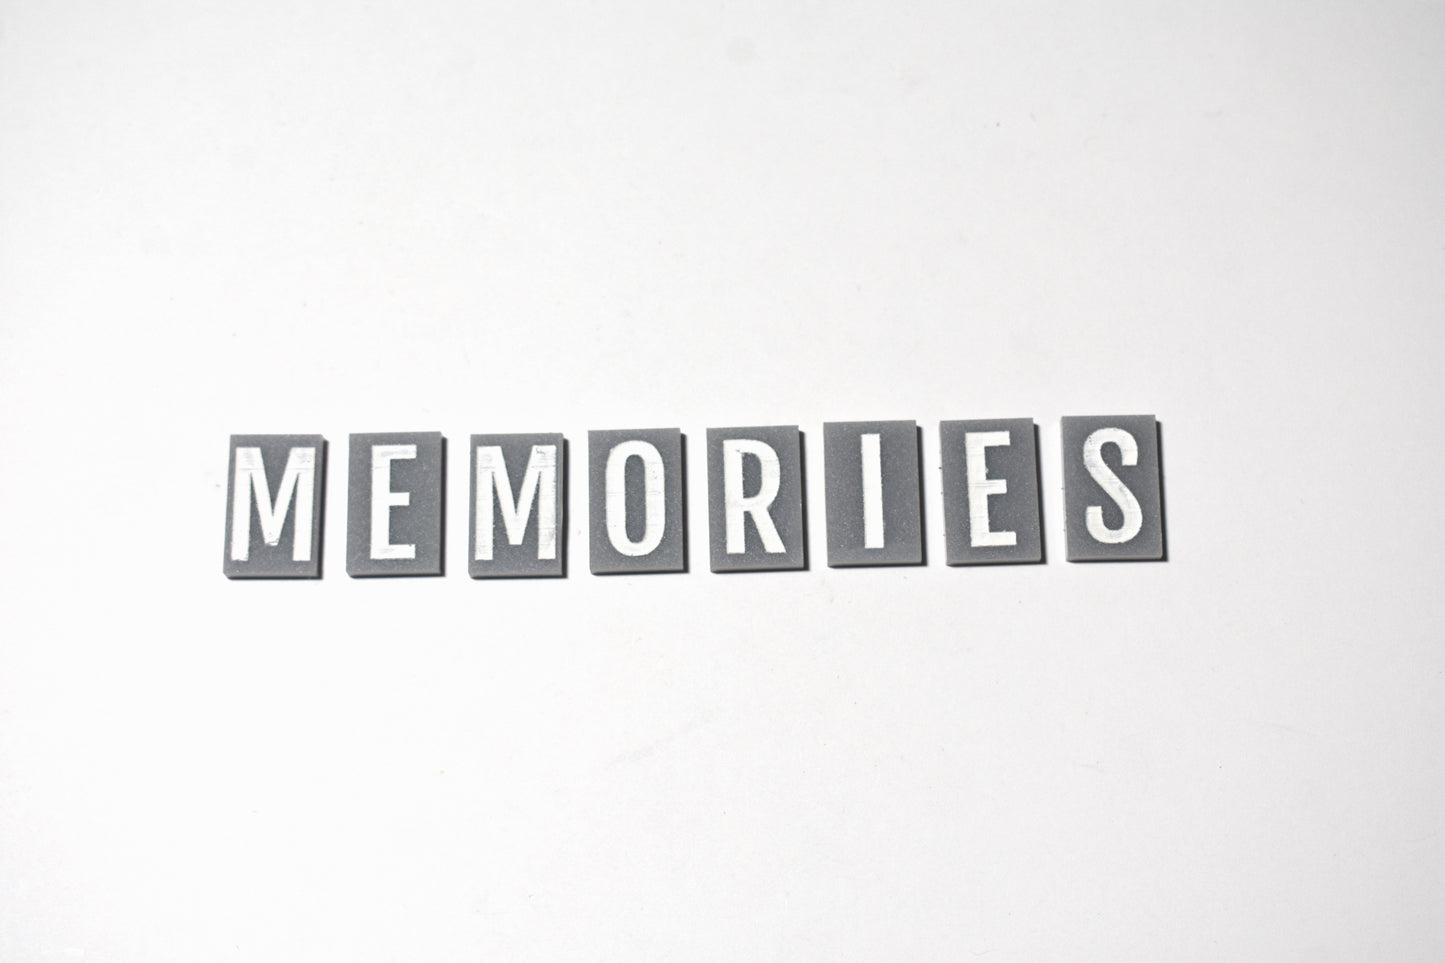 Memories tiles - Creative Designs By Kari